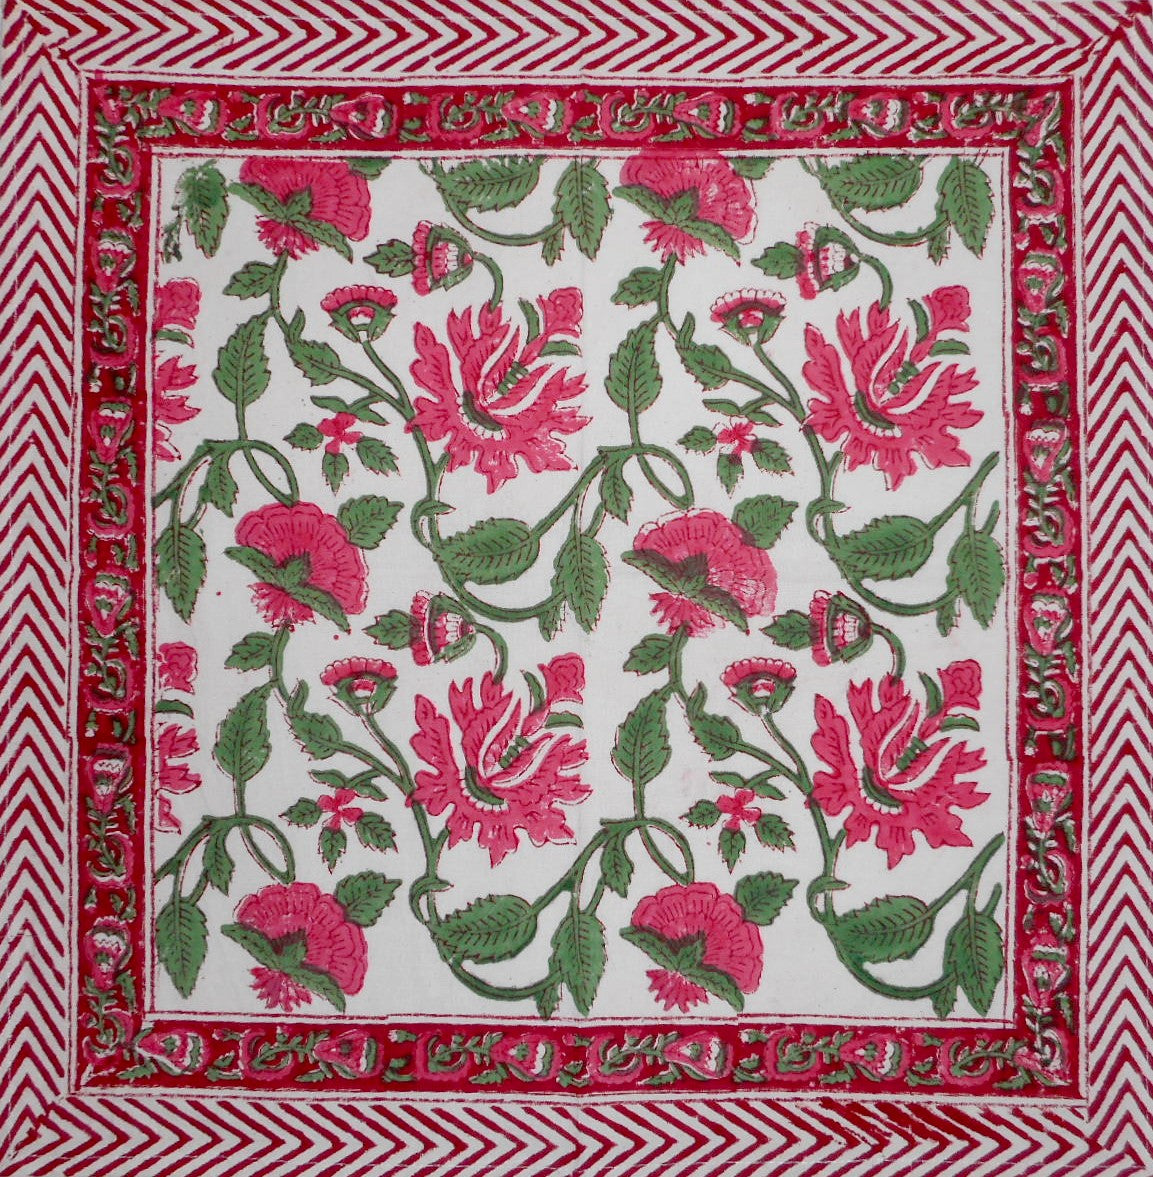 Pretty in Pink Blockdruck-Tischserviette aus Baumwolle, 50,8 x 50,8 cm, Rosa